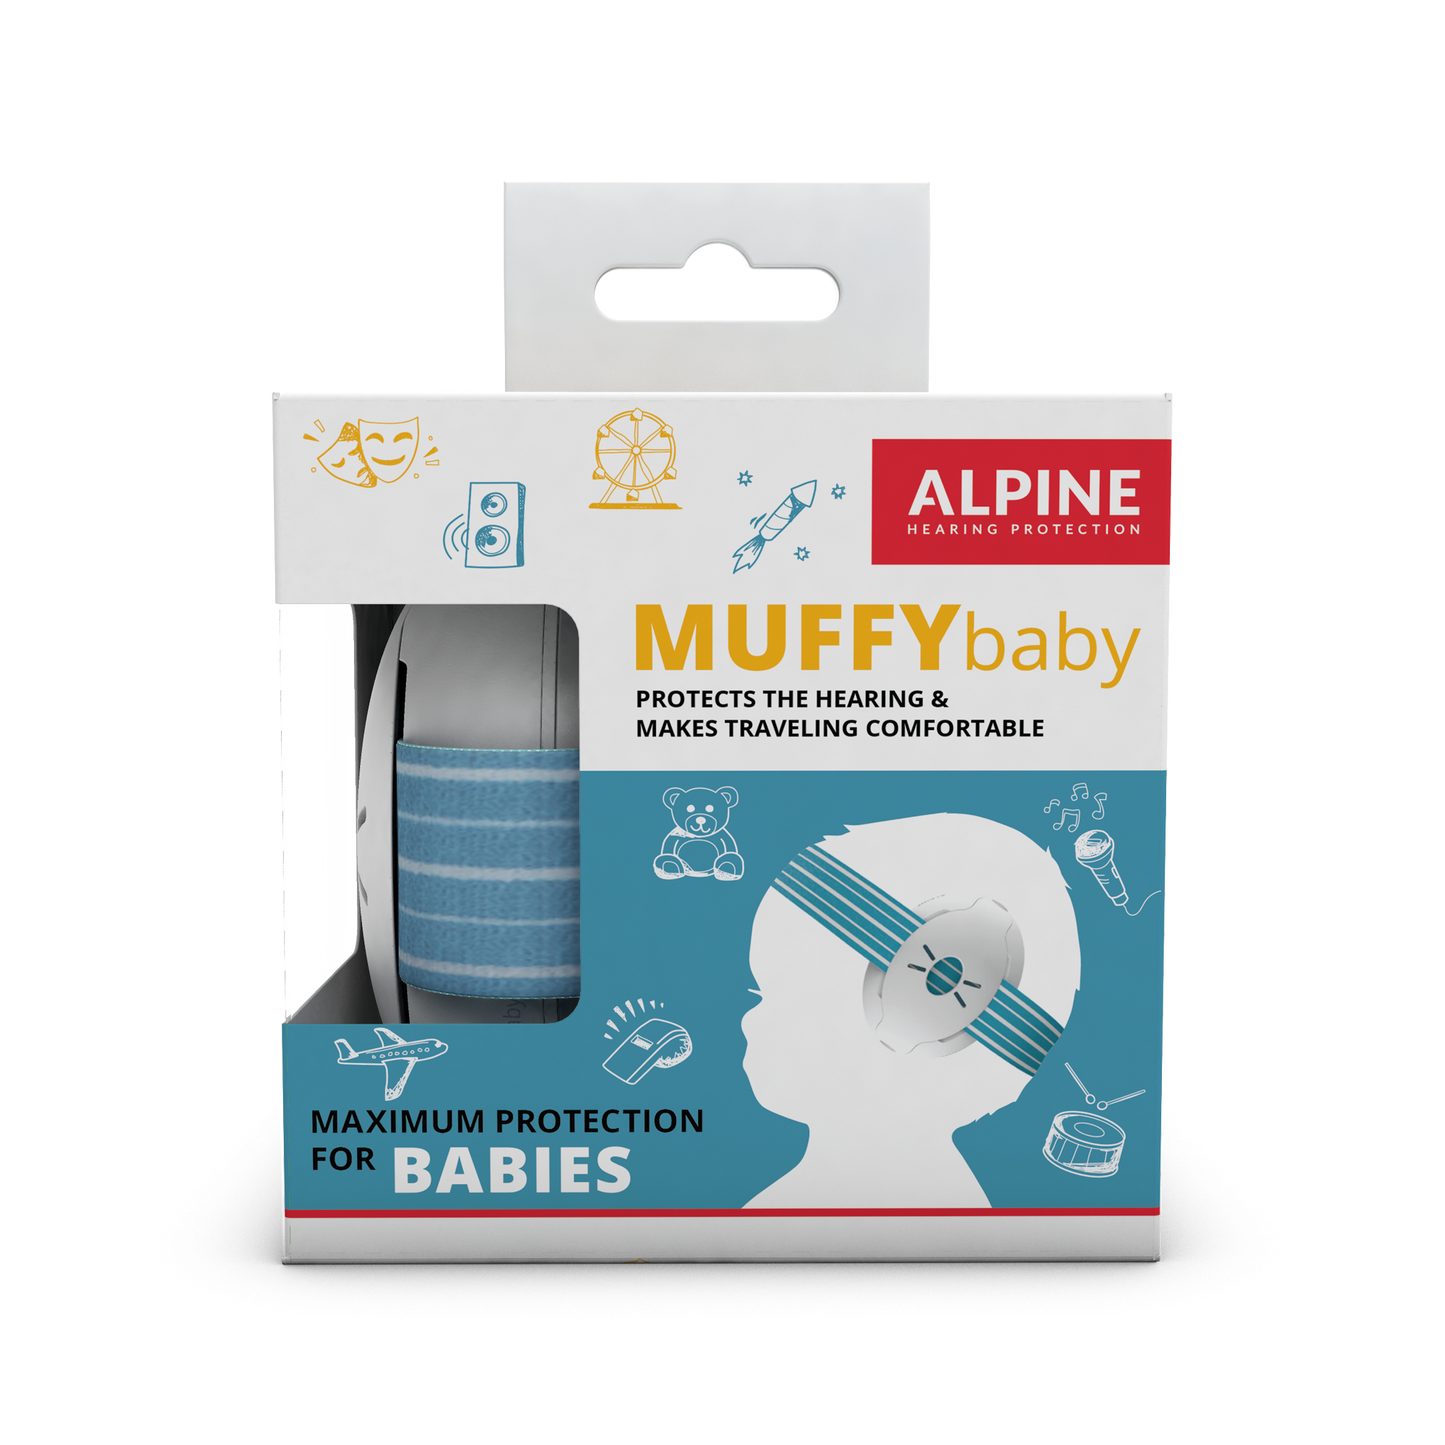 Muffy Baby Alpine Protection Auditive Bouchons d’oreilles Casque anti-bruit red dot award protéger votre oreille Enfants Bébés 